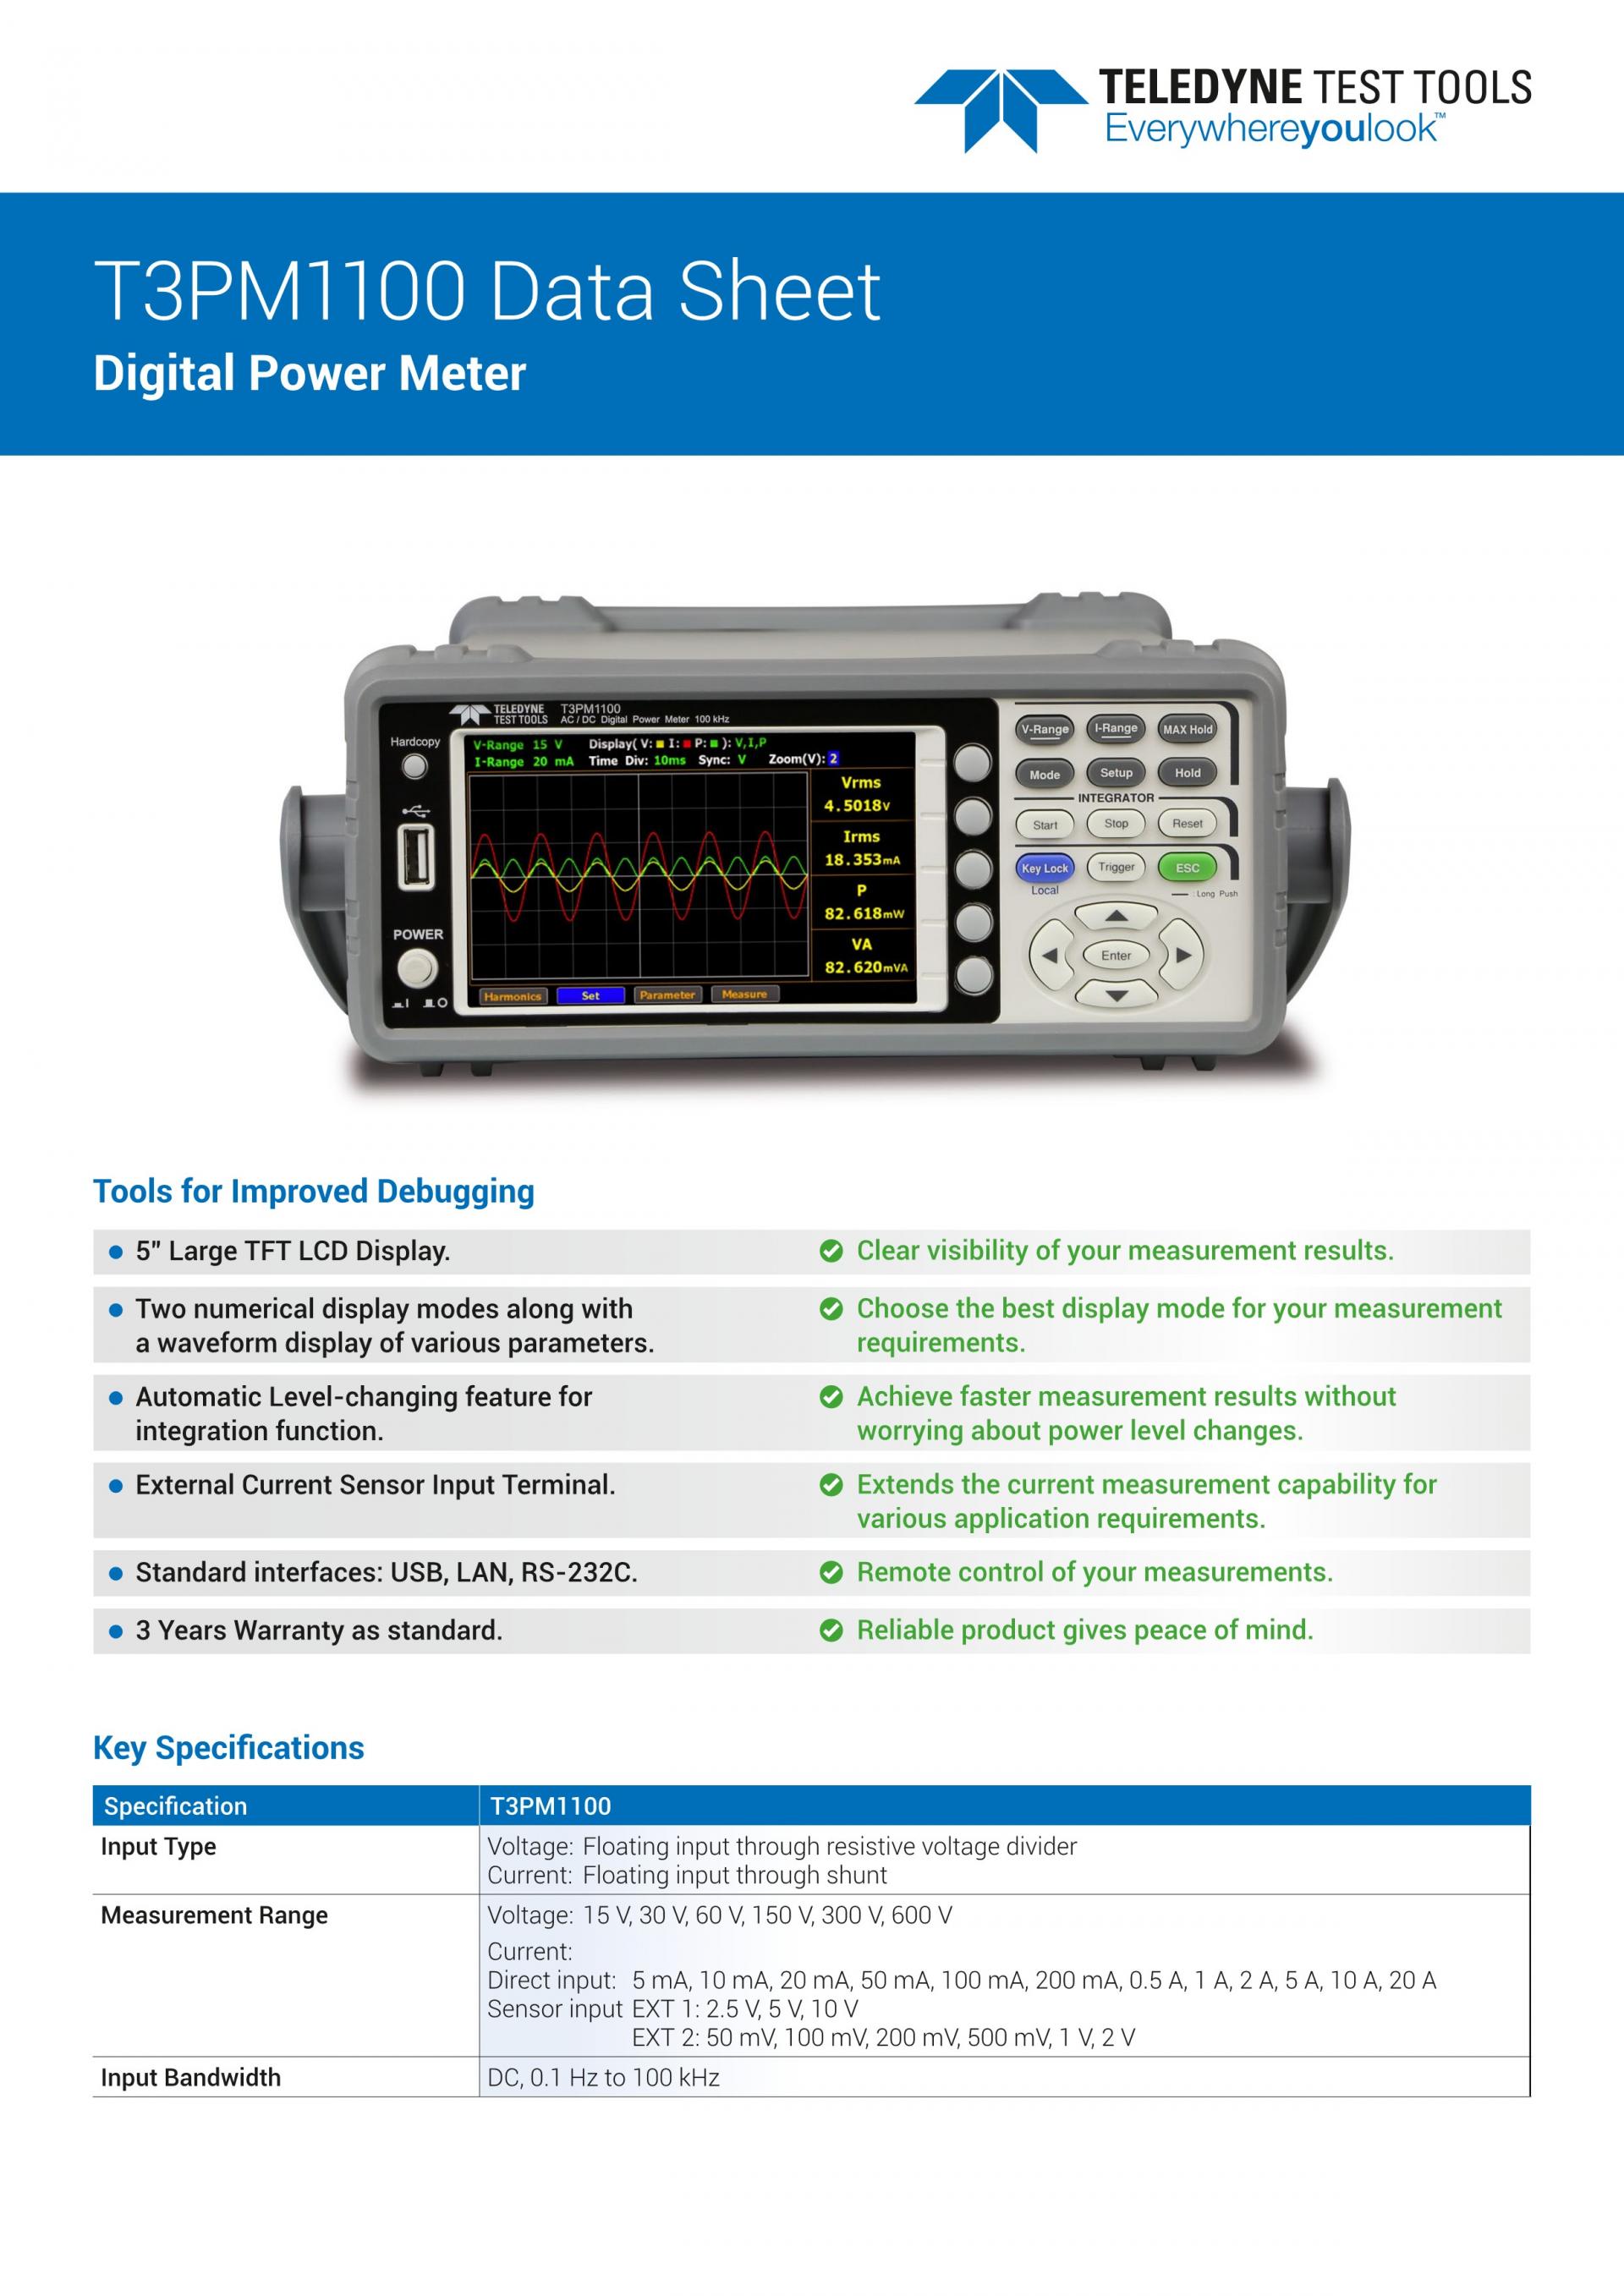 T3PM1006 Digital Power Meter - LeCroy